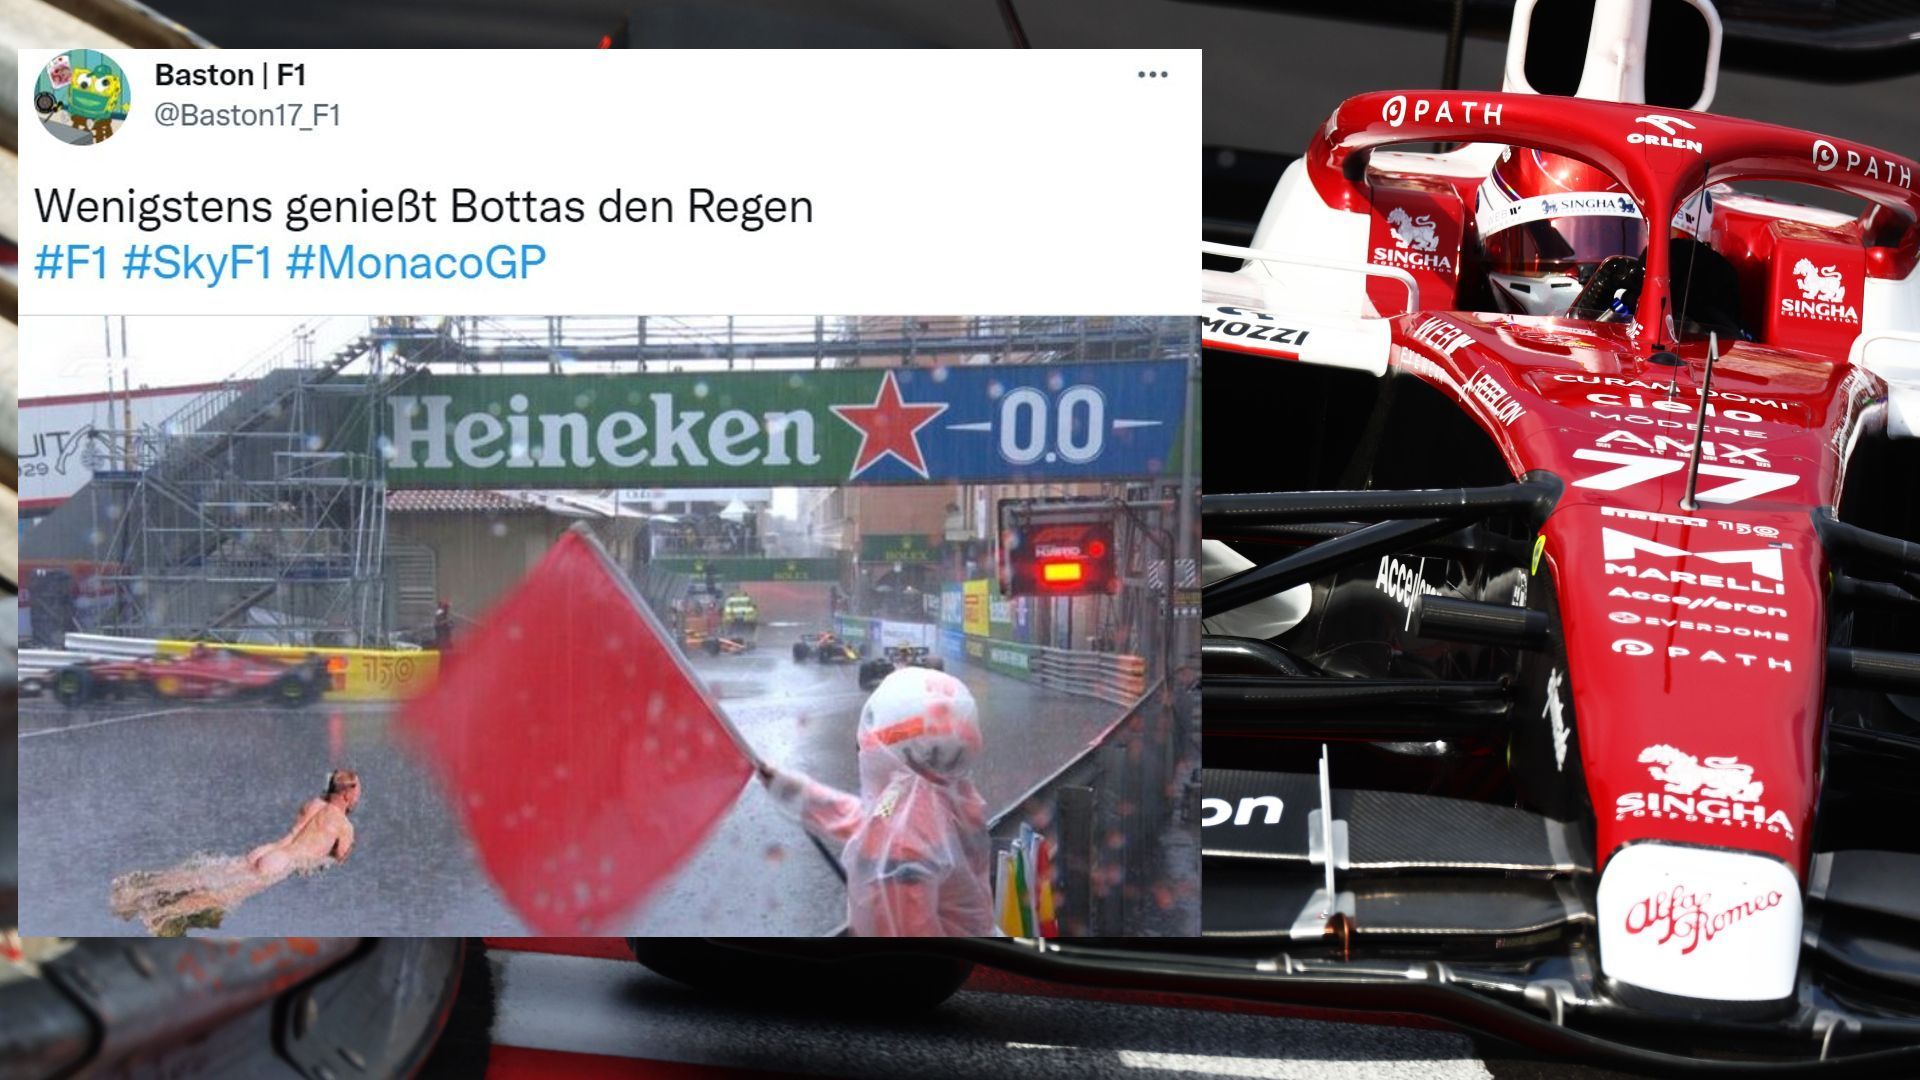 
                <strong>So reagiert das Netz auf den Monaco-GP</strong><br>
                "Baston17_F1" geht darauf ein, dass Valtteri Bottas ja neulich in den Rocky Mountains im eiskalten Wasser schwimmen war.
              